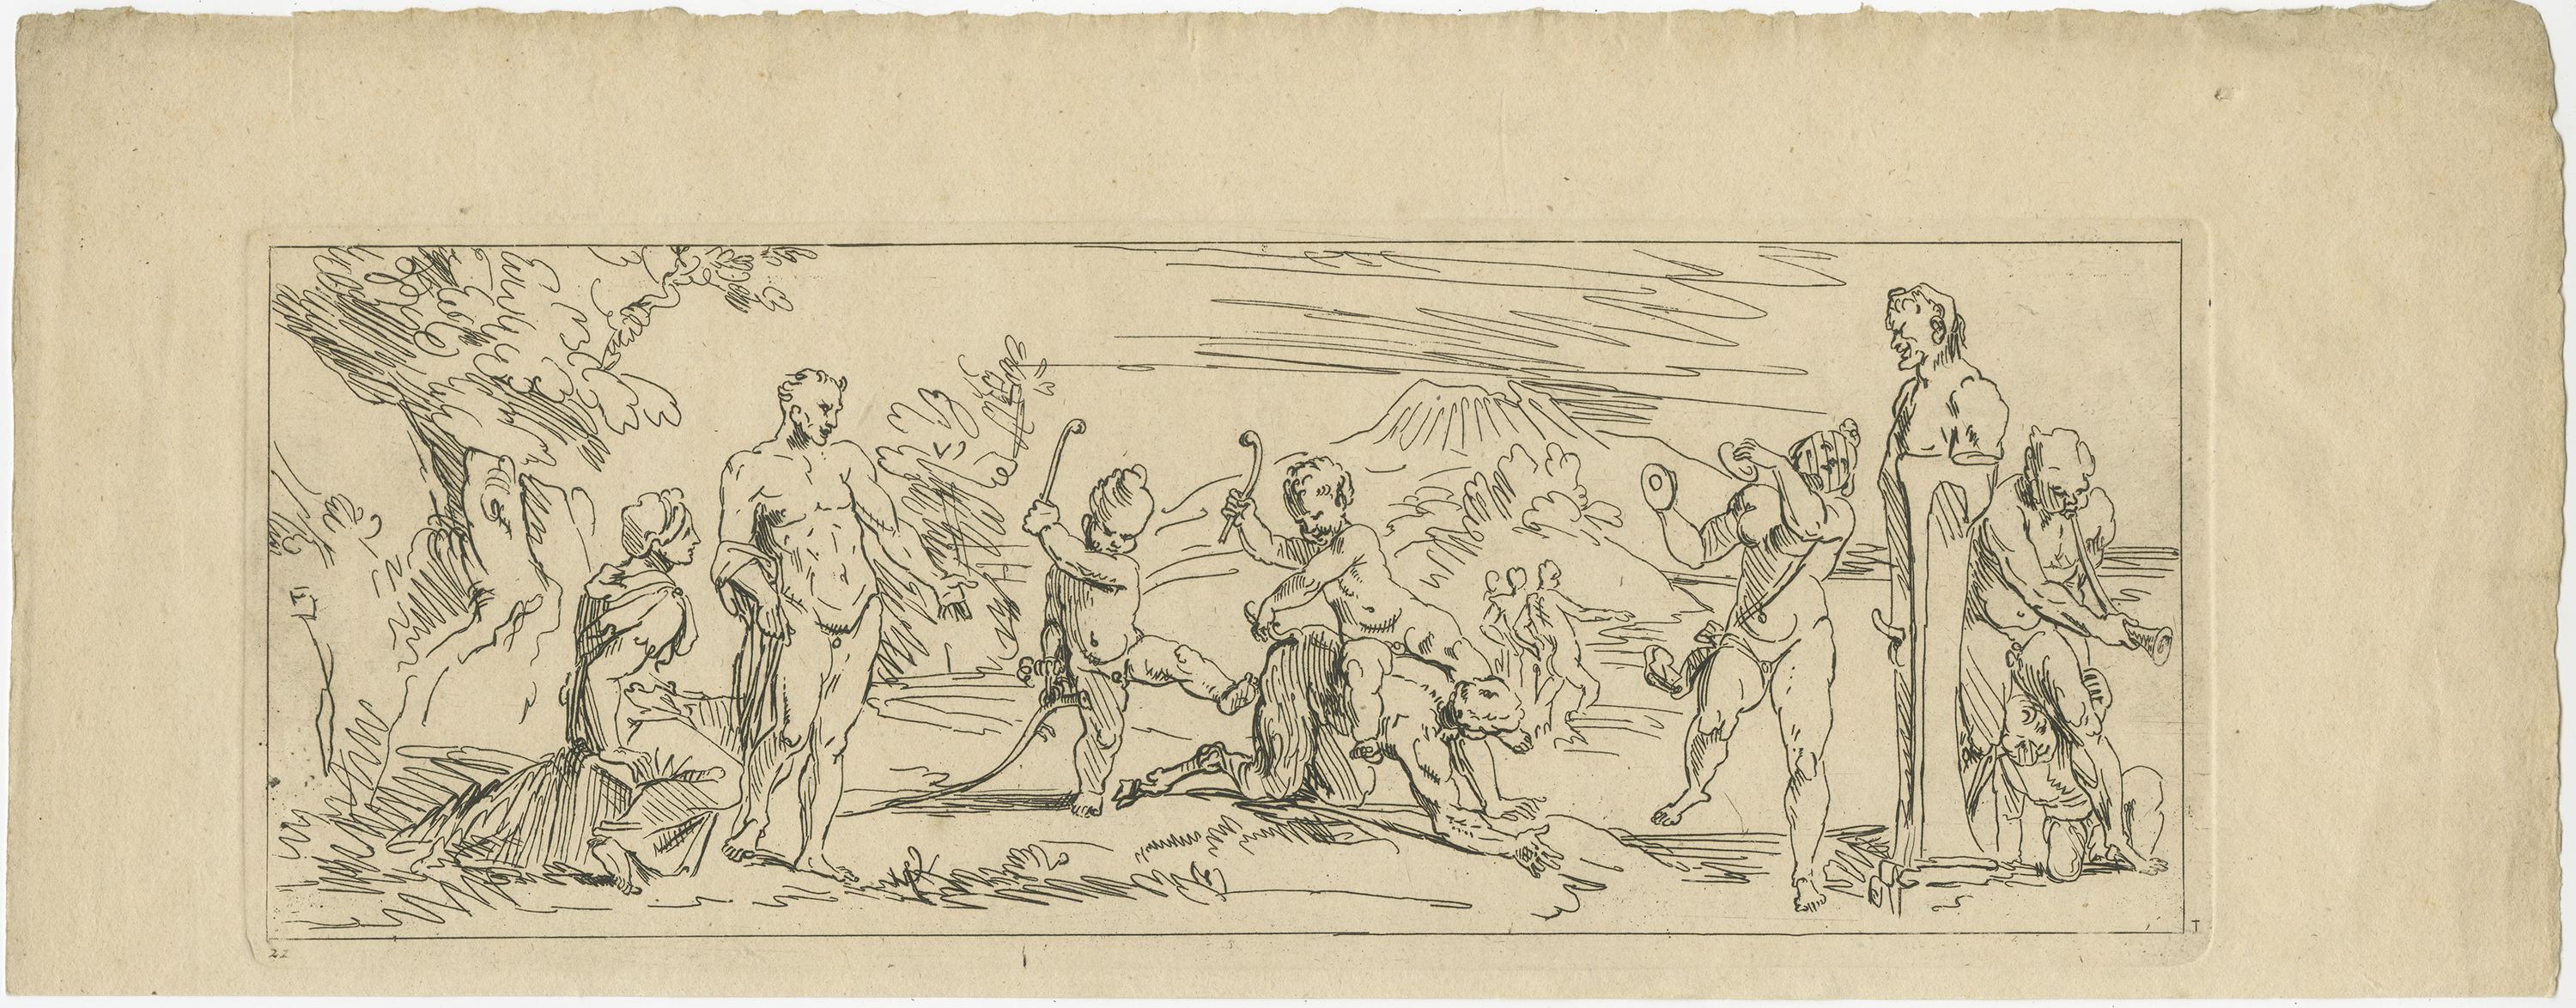 Ensemble de cinq estampes anciennes représentant divers personnages tels que des nymphes. Ces estampes font partie d'une série intitulée 